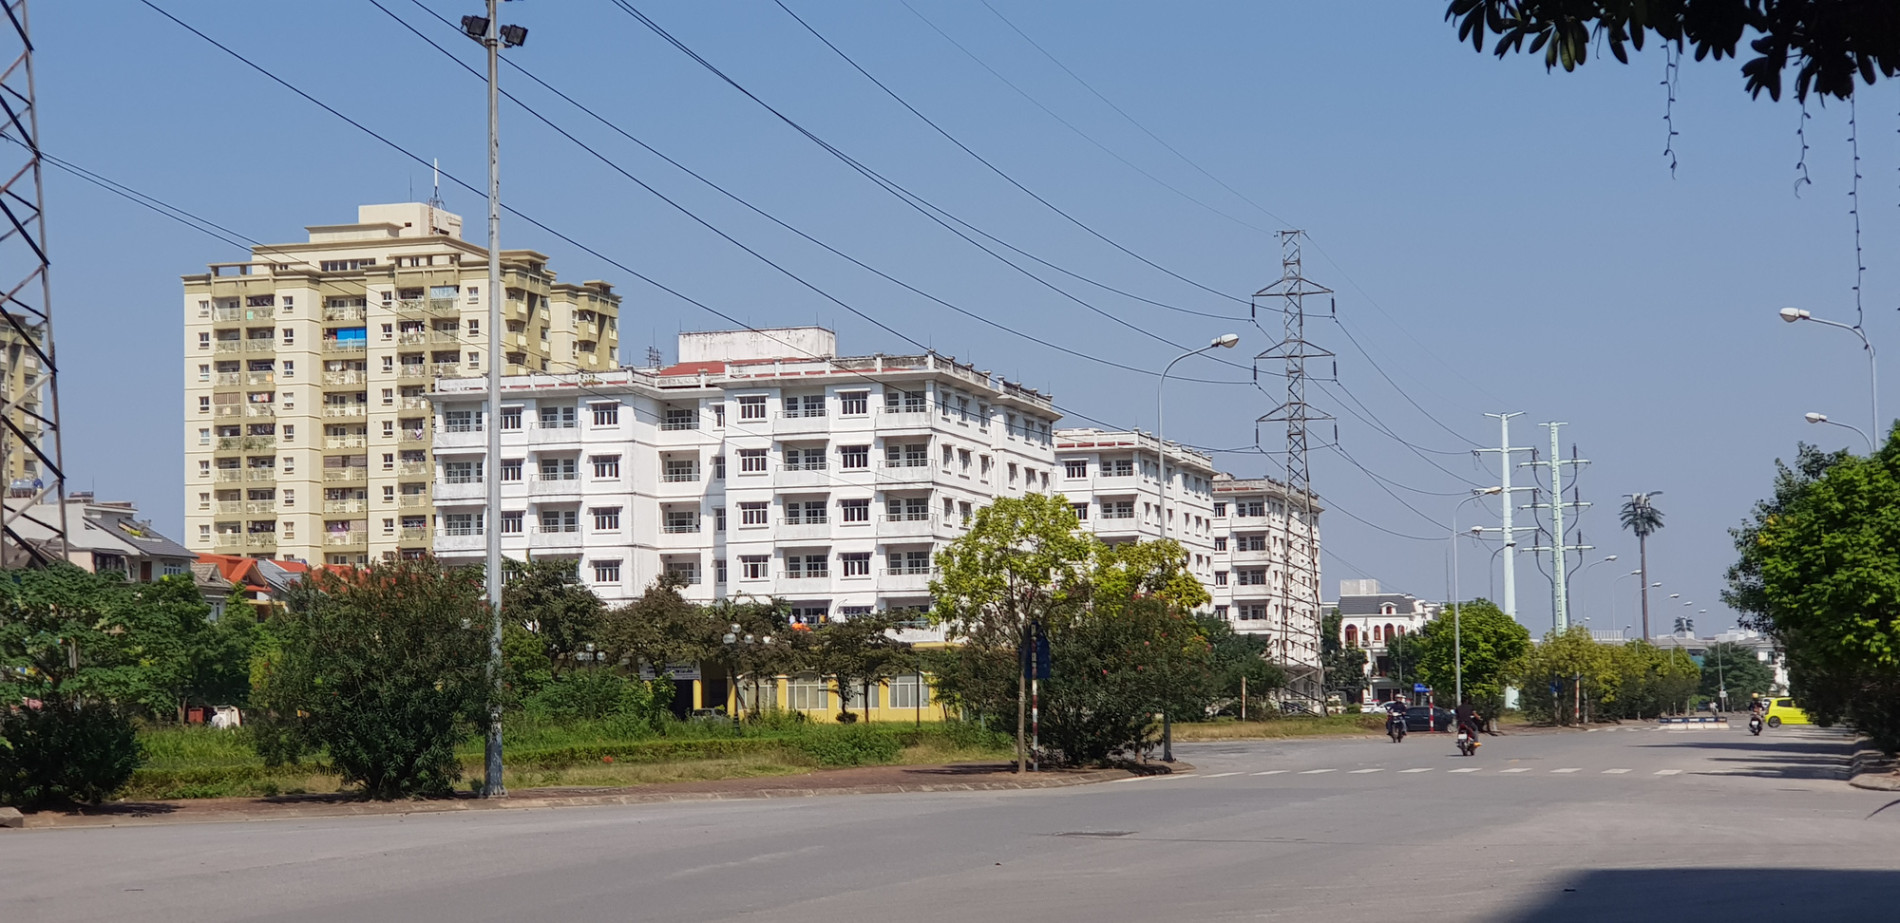 Hà Nội lên tiếng về 3 toà chung cư bỏ hoang gần 20 năm tại Khu đô thị Sài Đồng